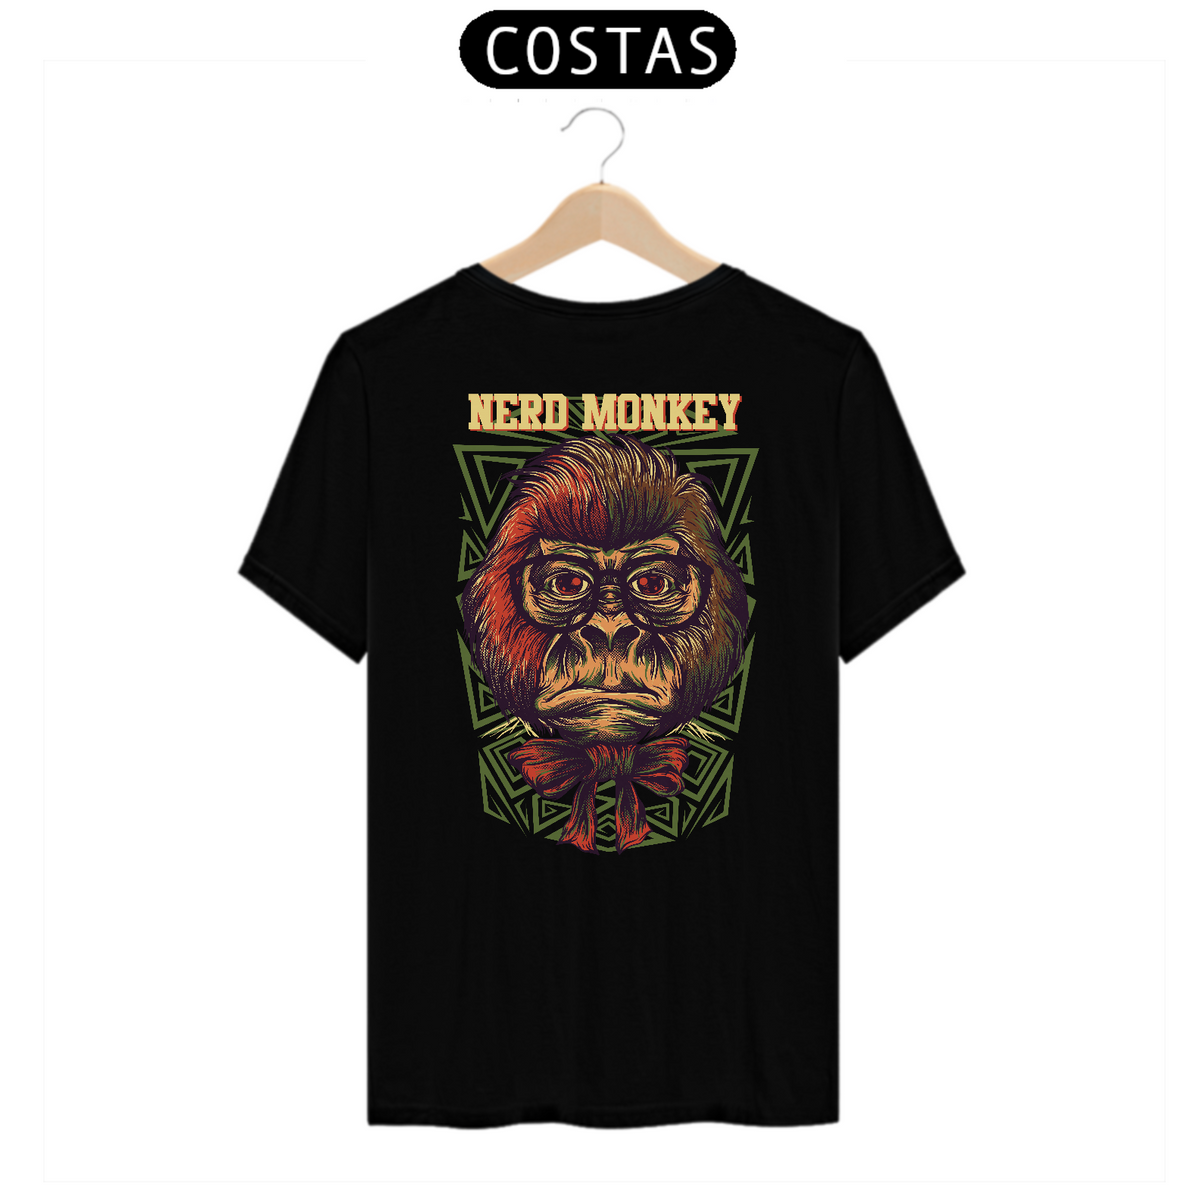 Nome do produto: Camiseta Nerd Monkey